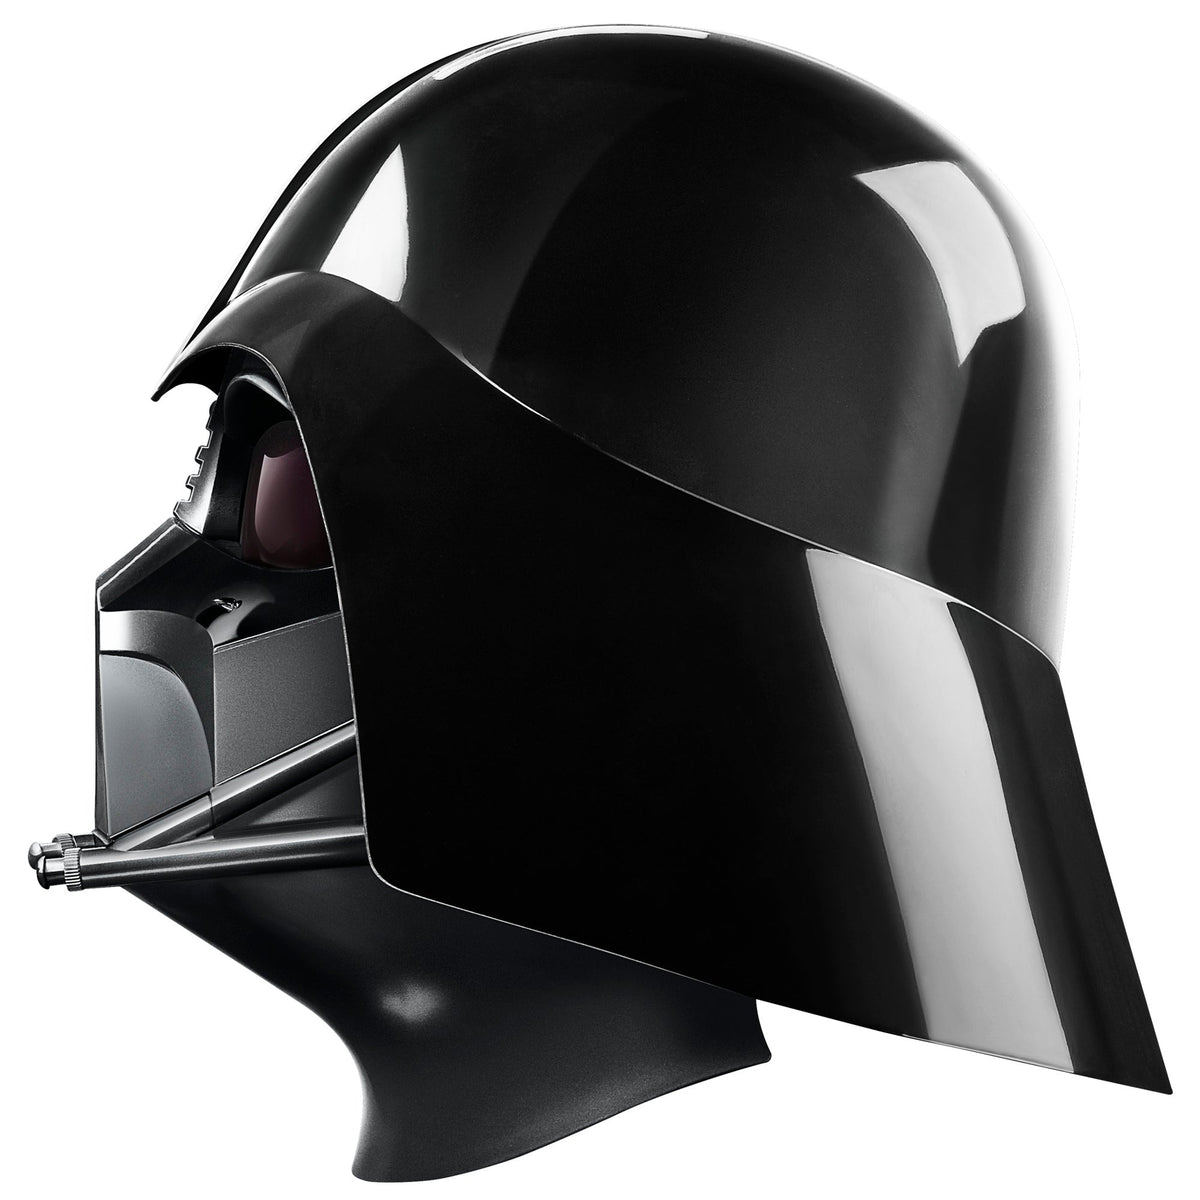 Deal Alert: Save 25% Off the Star Wars: The Black Series Darth Vader Helmet  - IGN